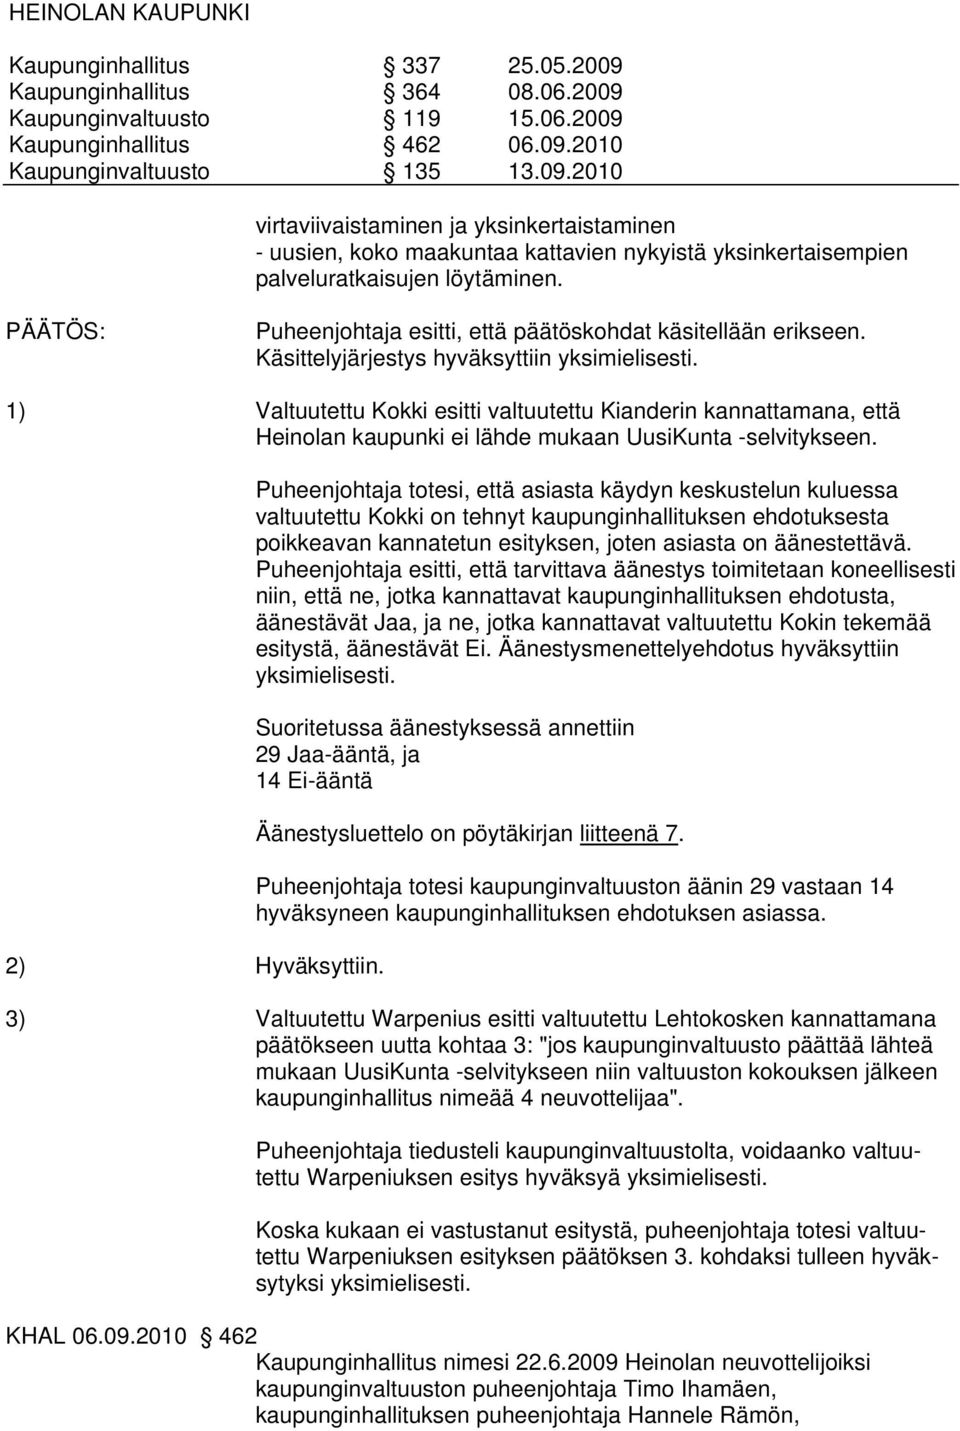 1) Valtuutettu Kokki esitti valtuutettu Kianderin kannattamana, että Heinolan kaupunki ei lähde mukaan UusiKunta -selvitykseen. 2) Hyväksyttiin.